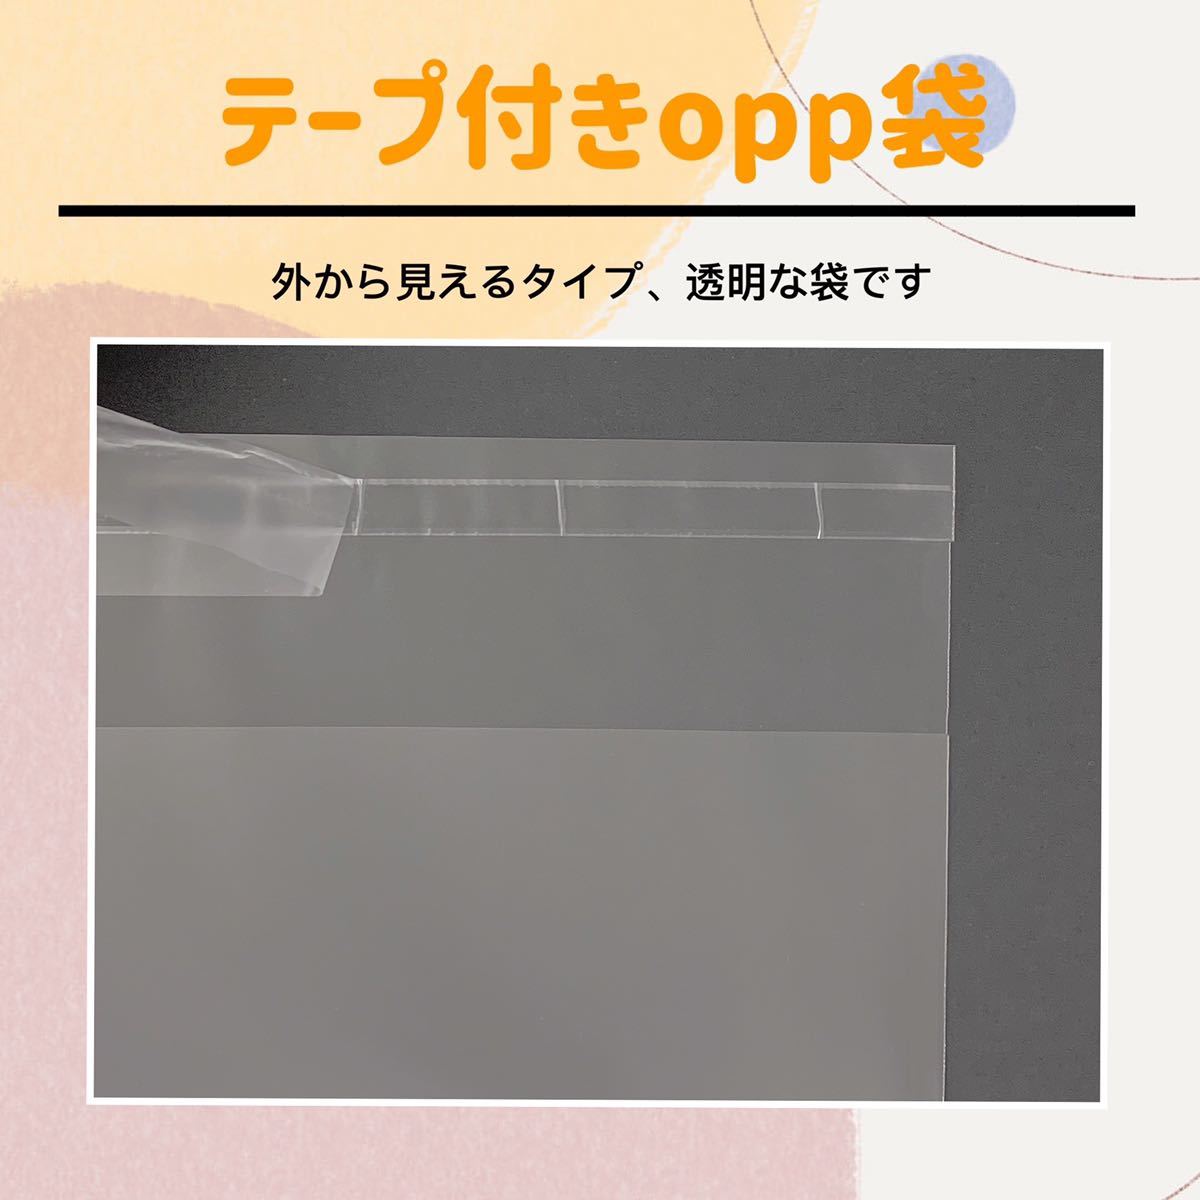 冬バーゲン☆】 透明袋 透明封筒 opp袋 b5 テープ付 袋 梱包資材 国産